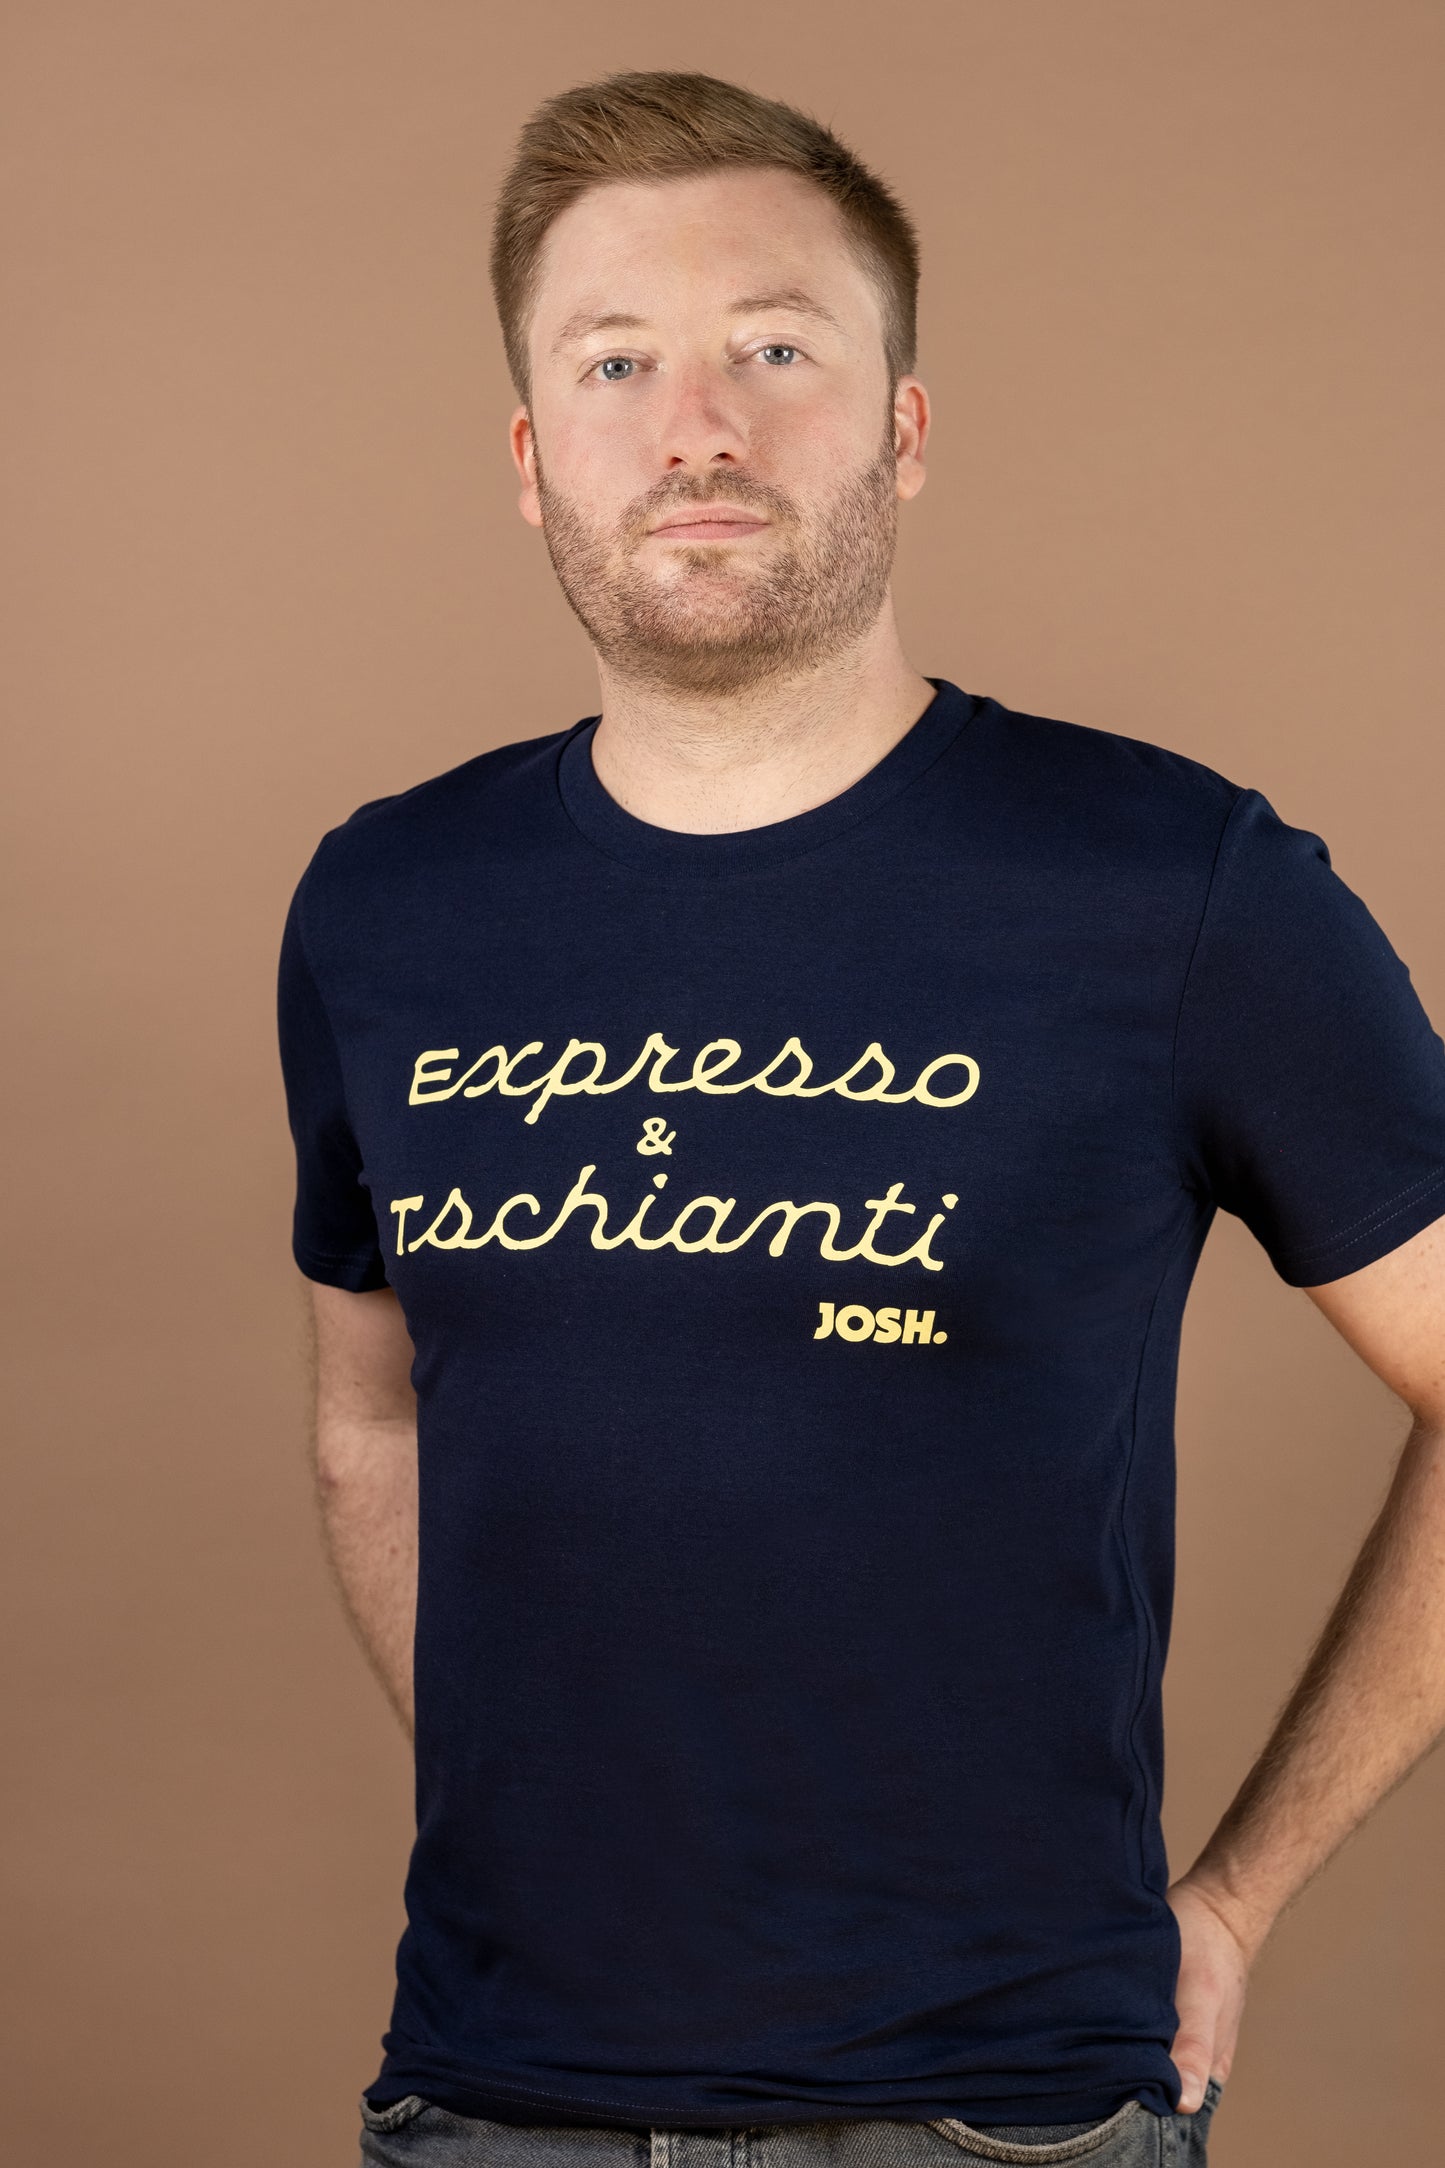 JOSH. T-Shirt "Expresso & Tschianti"